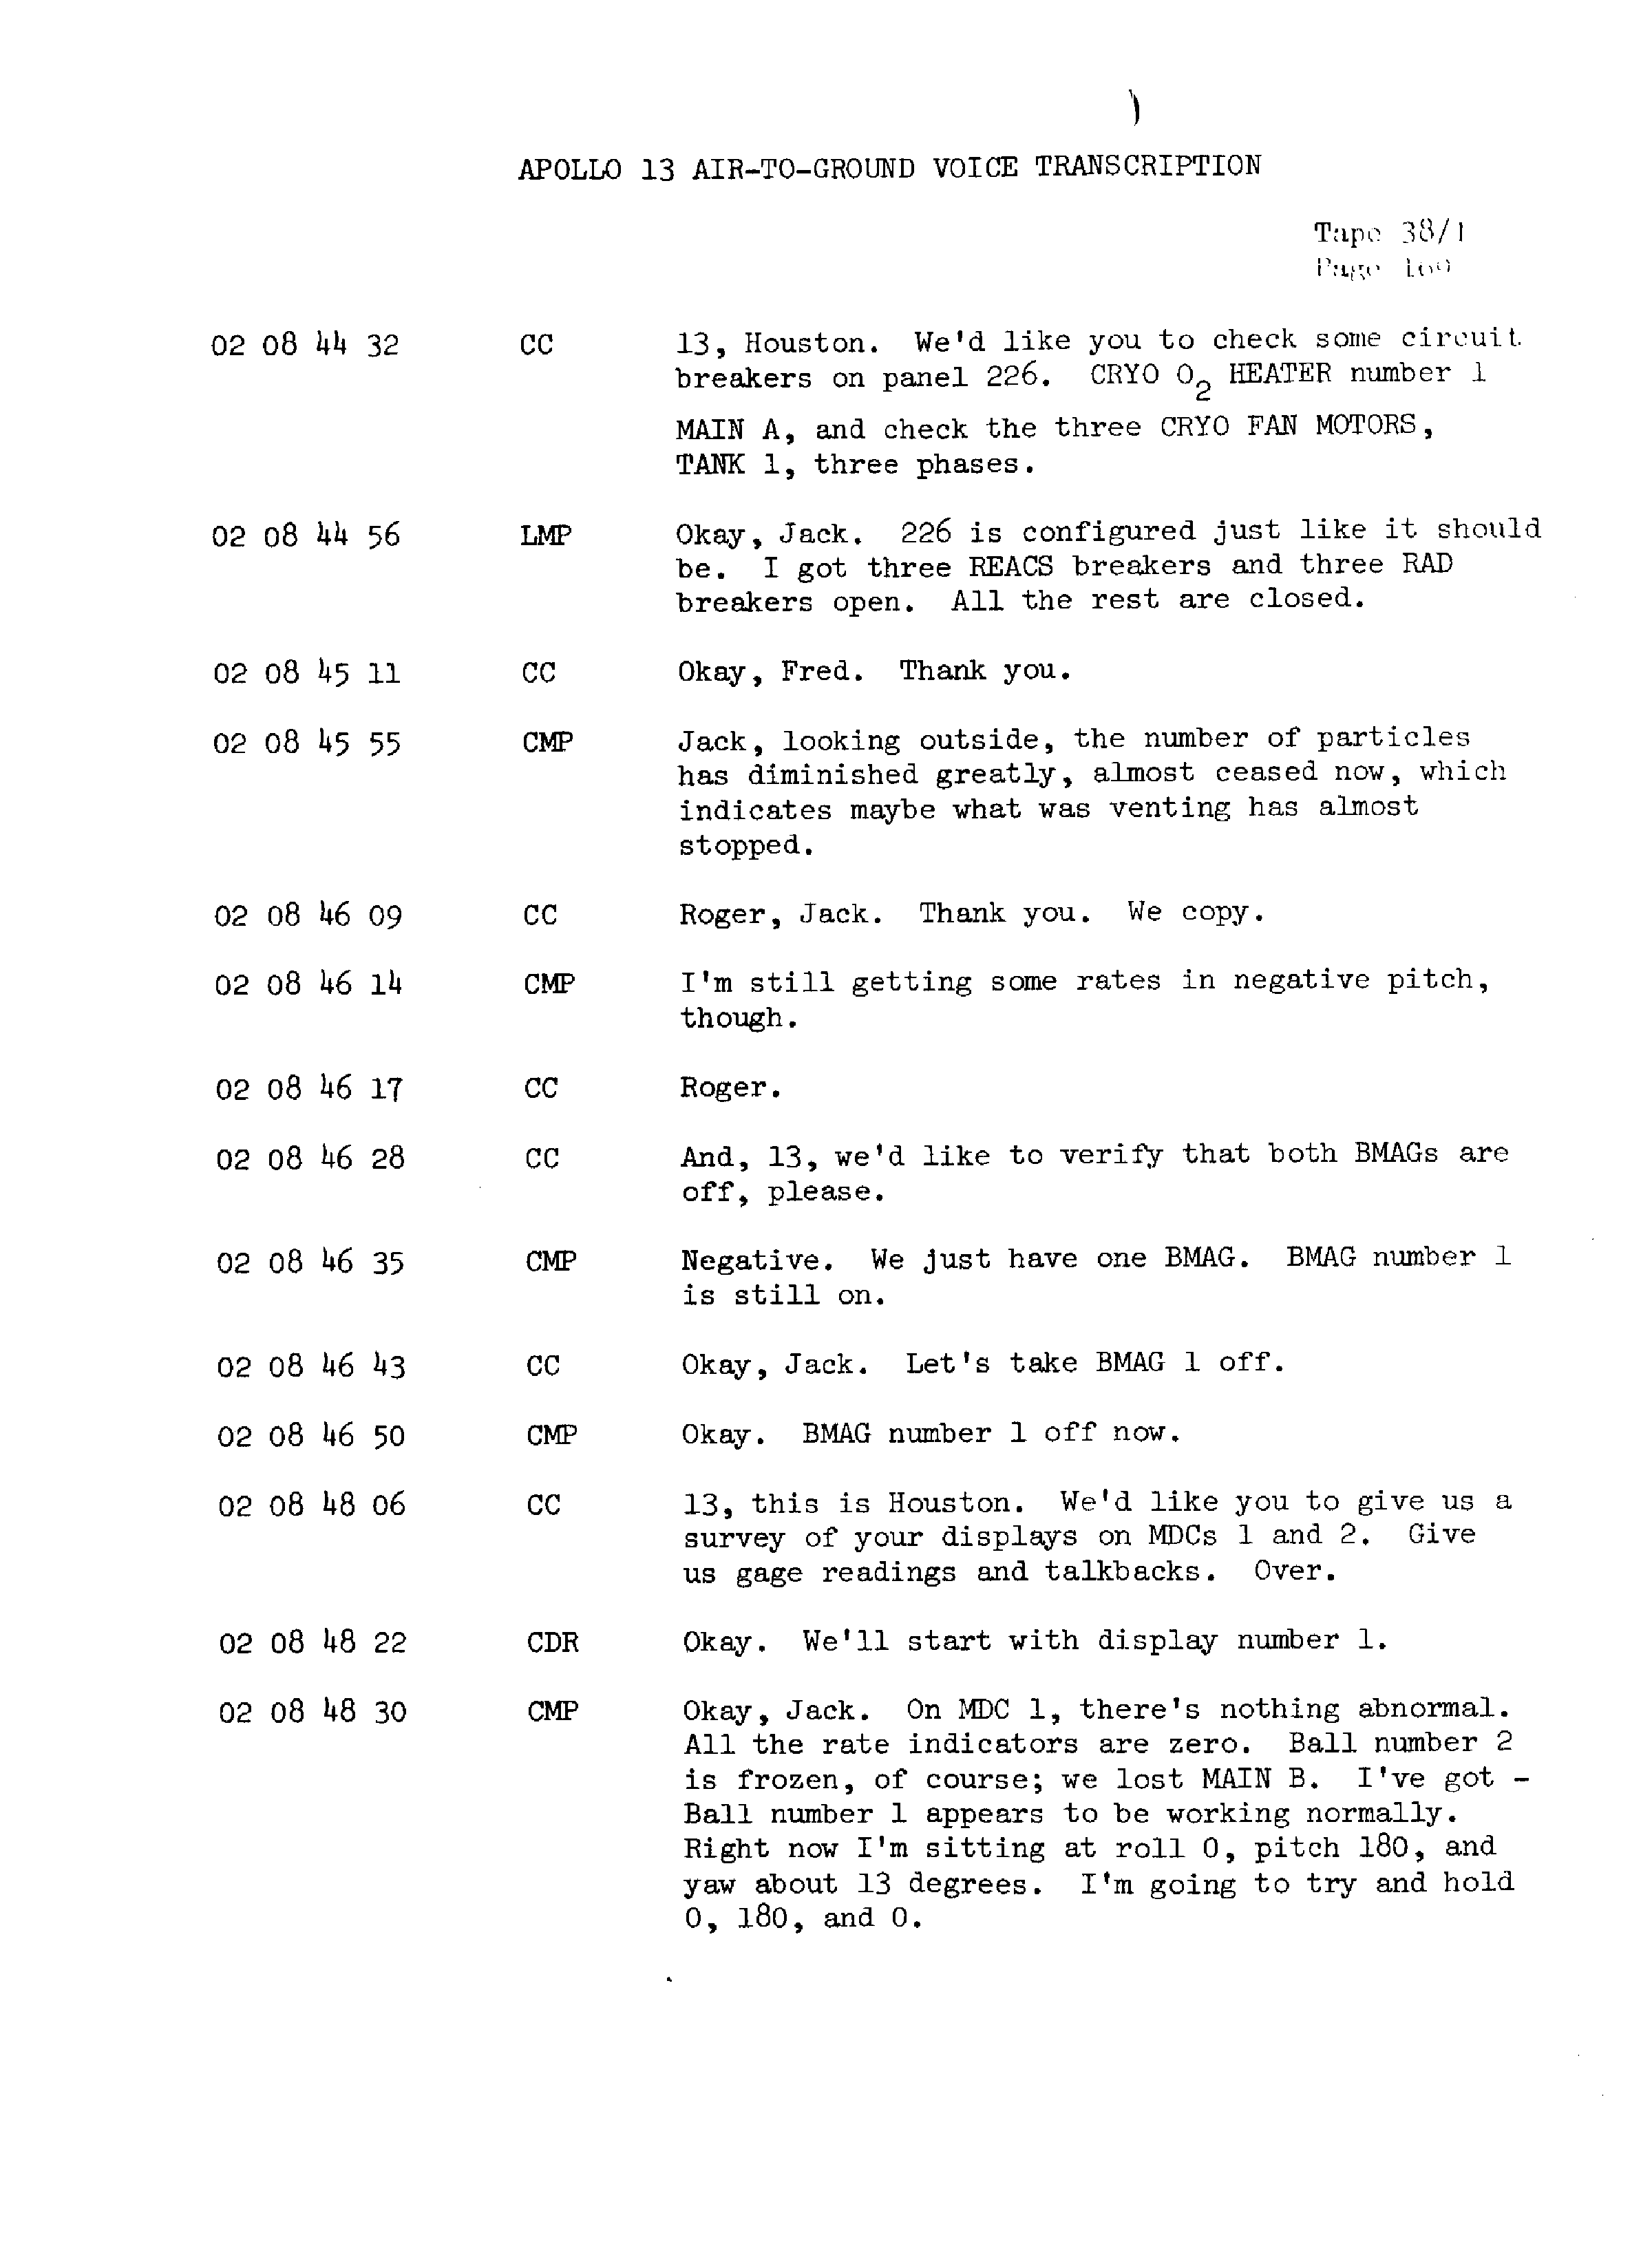 Page 176 of Apollo 13’s original transcript